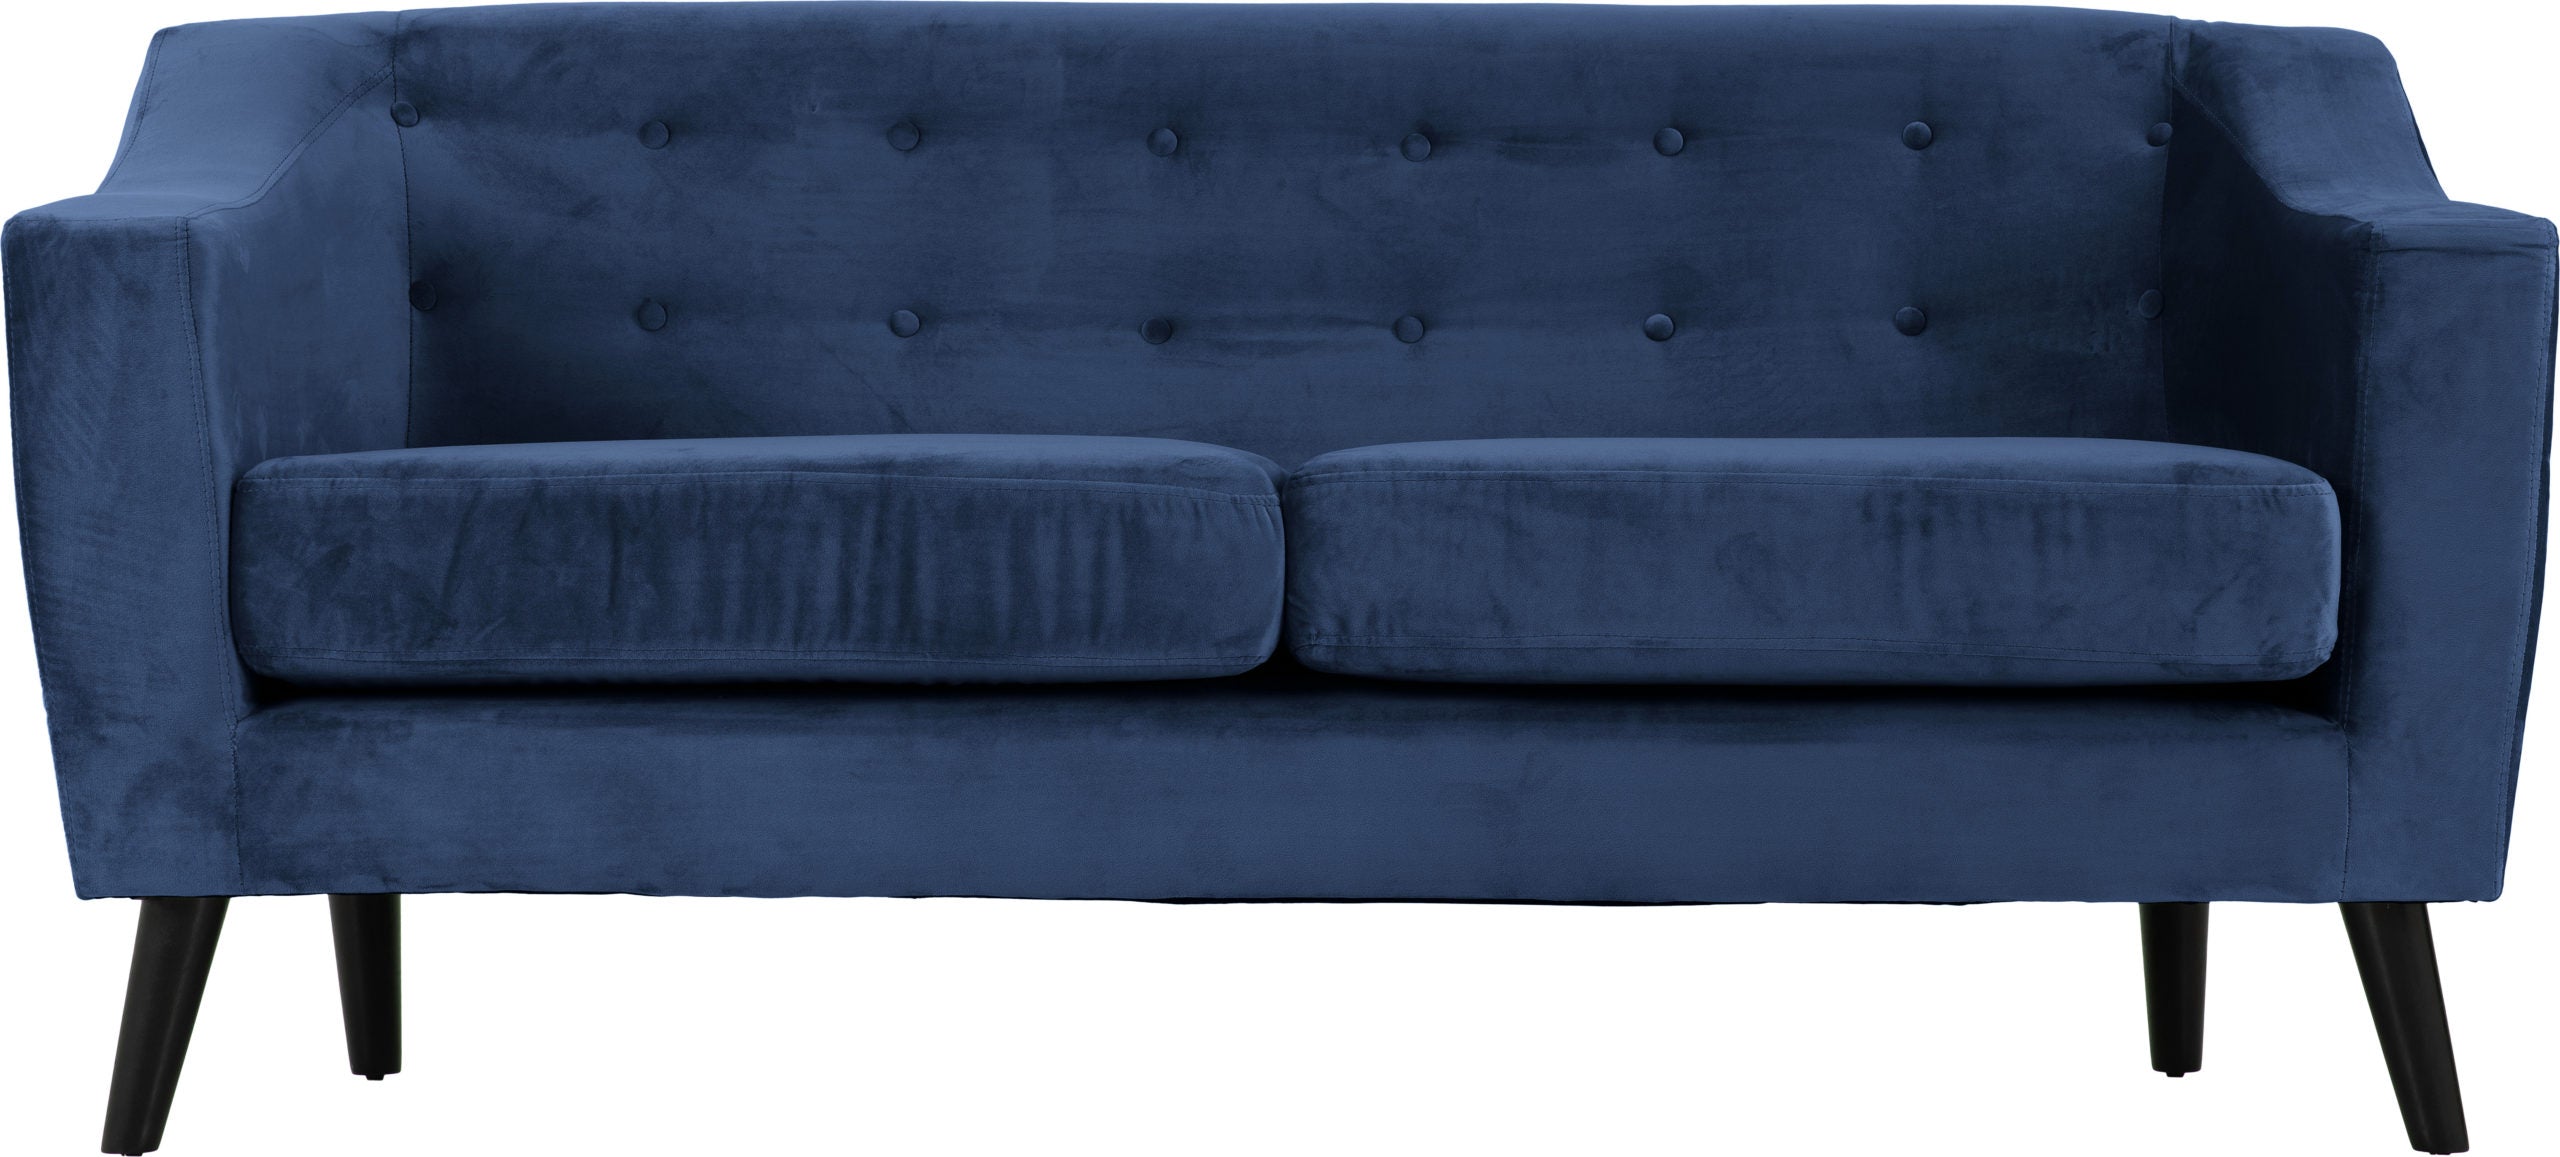 Ashley 3 Seater Sofa Blue Velvet Fabric